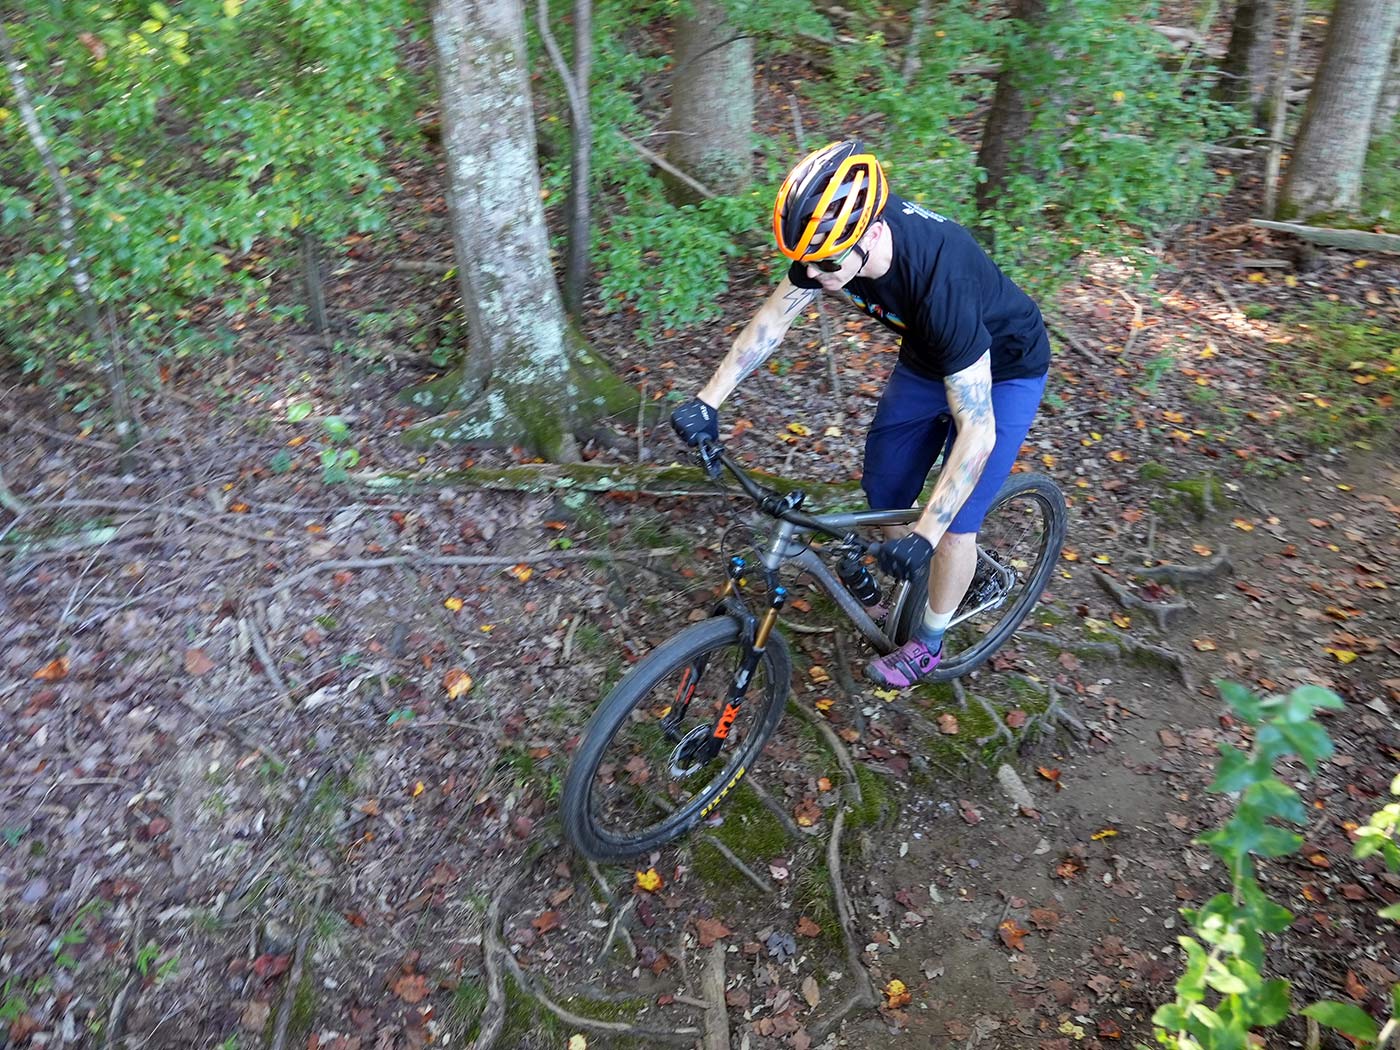 riding action photo for litespeed pinhoti 3 ti hardtail mountain bike review